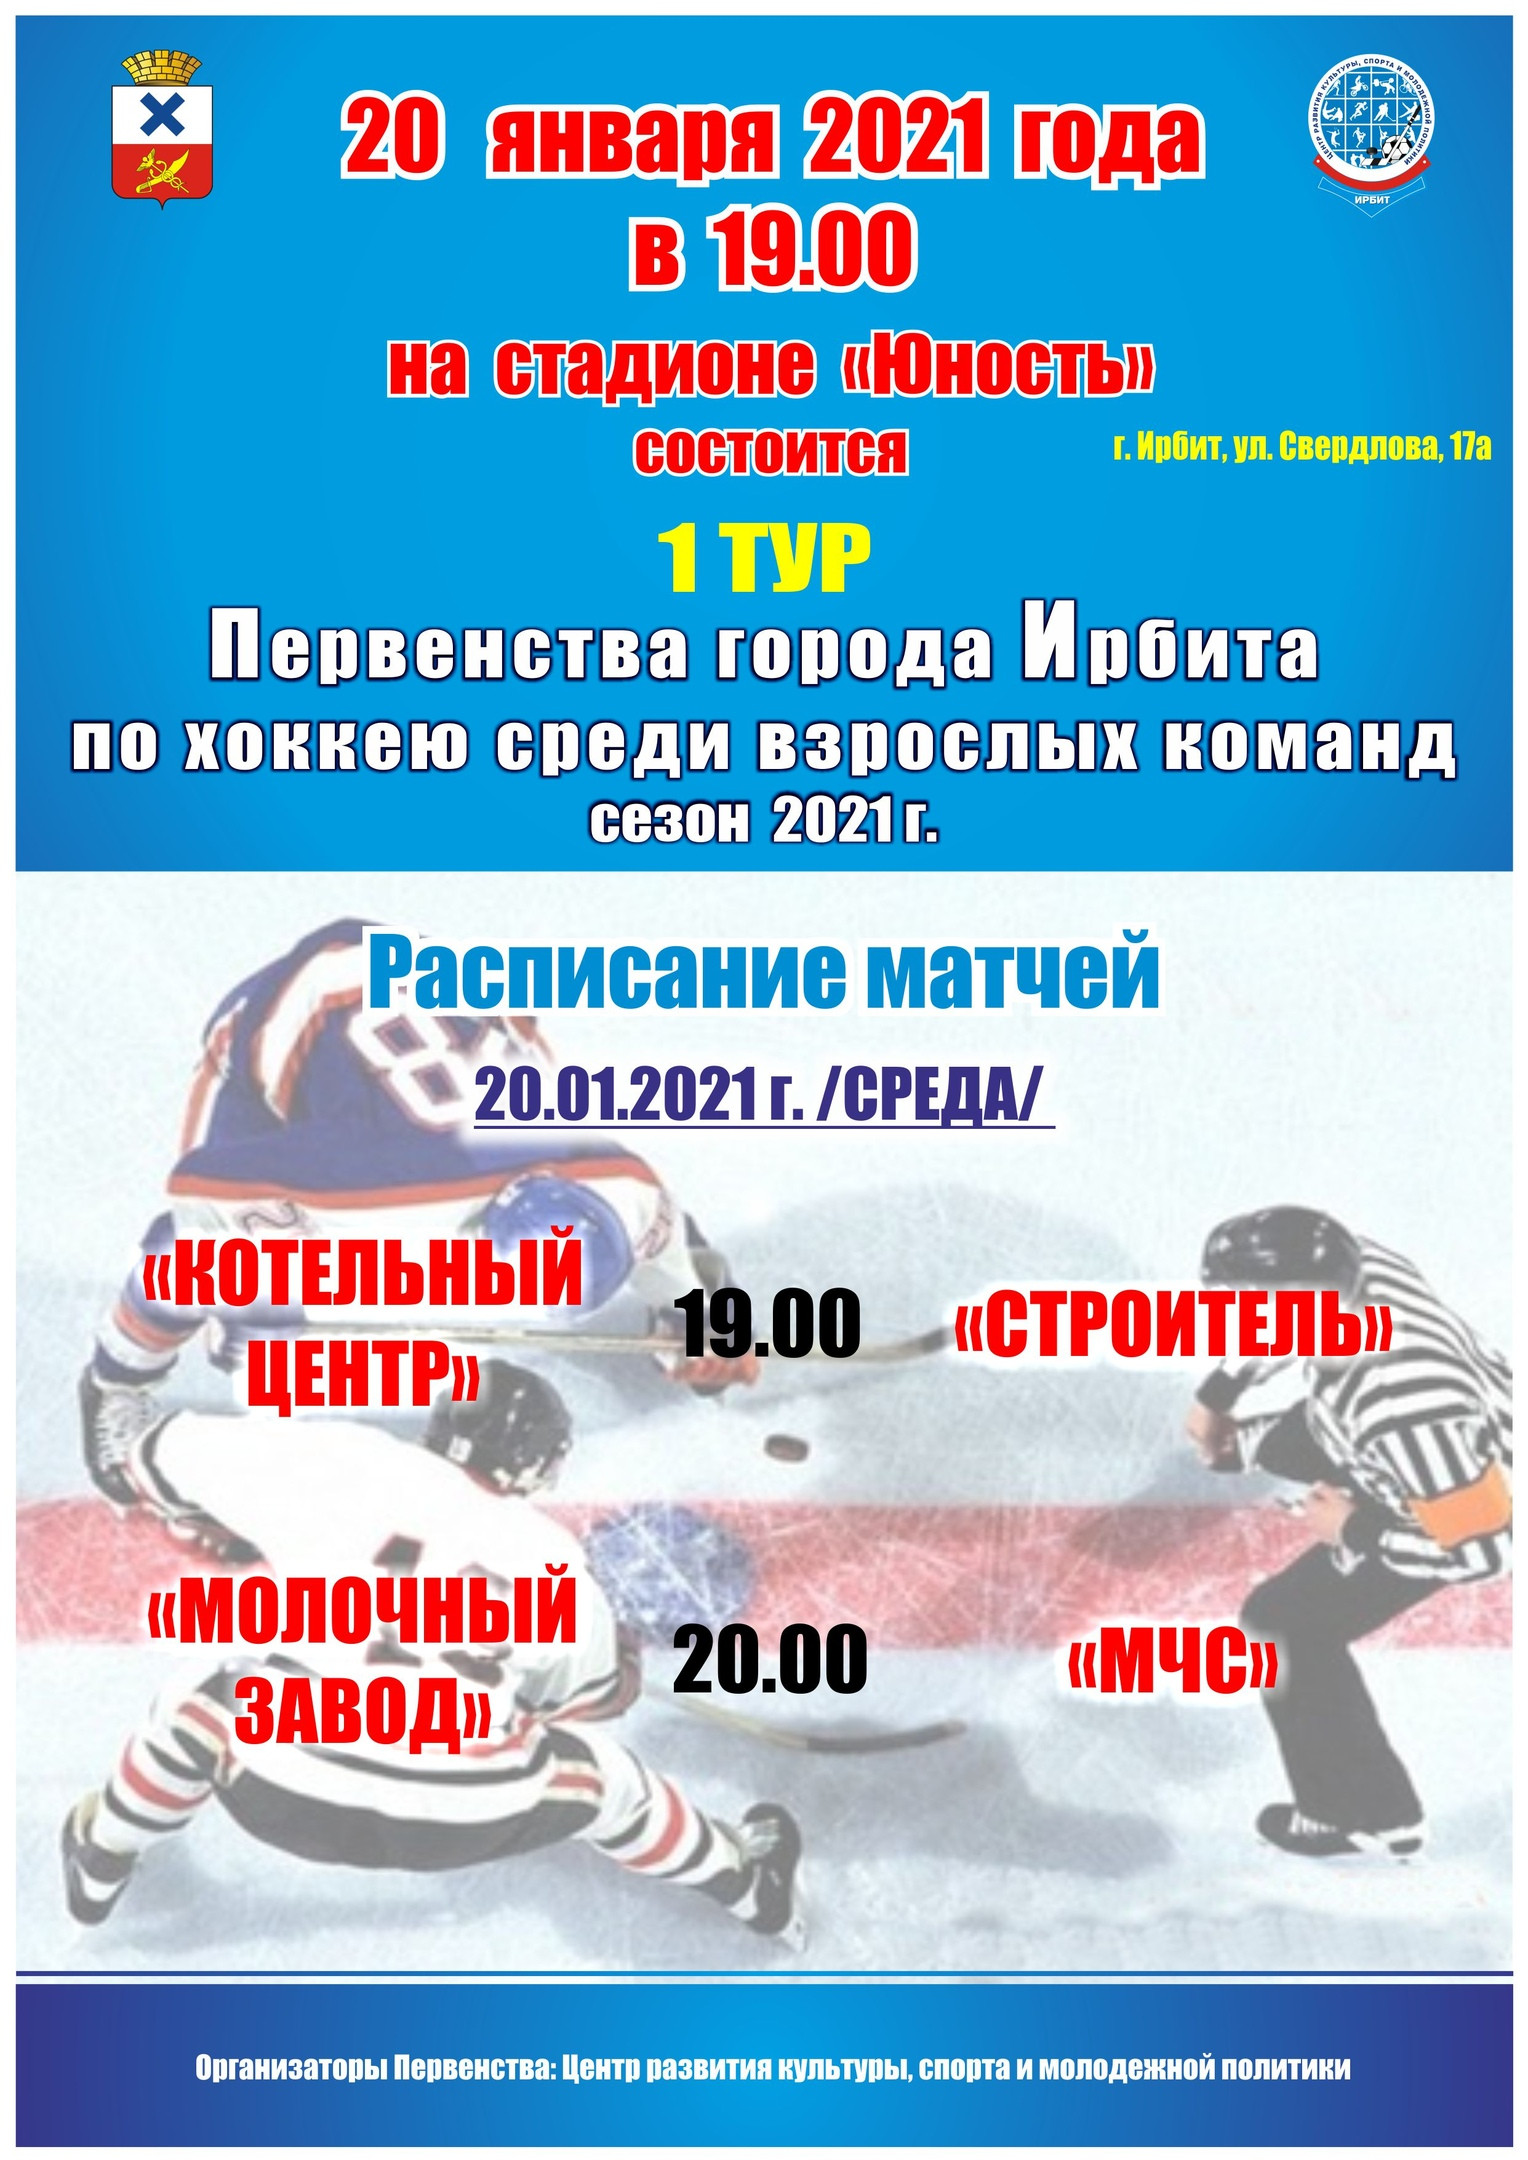 1 тур Первенства города Ирбита по хоккею среди взрослых команд, сезон 2021 г.